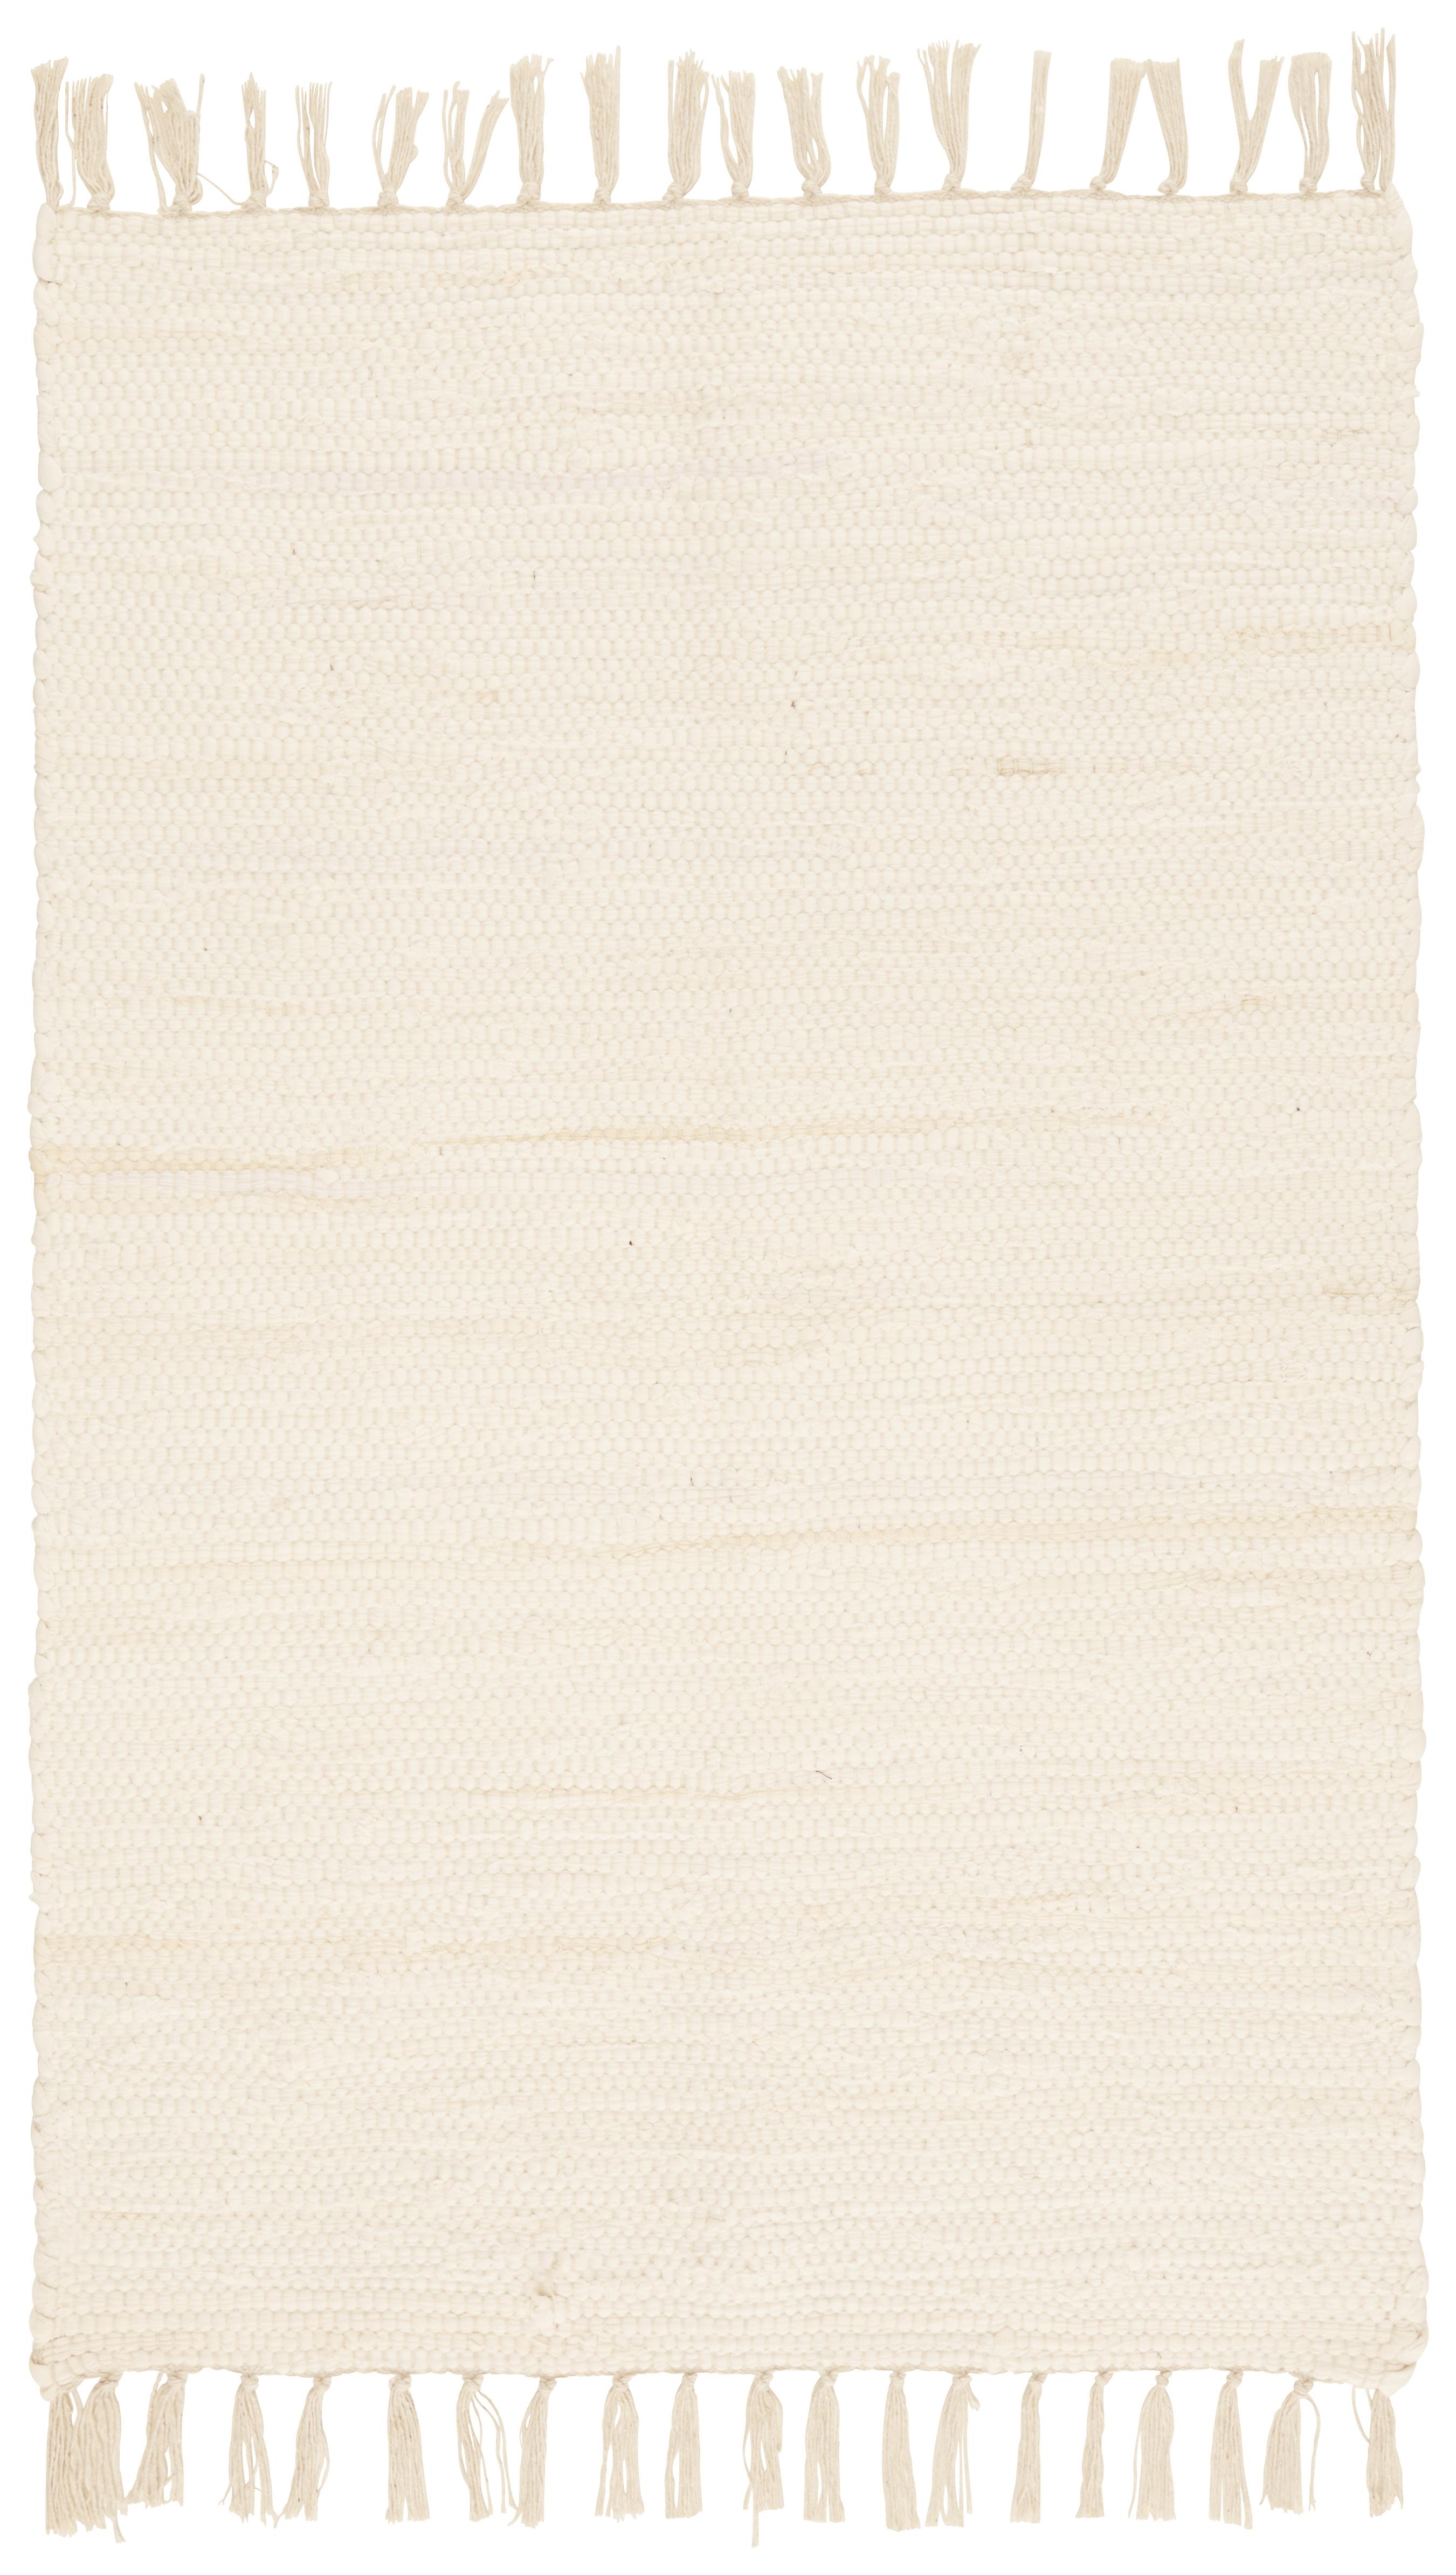 Plátaný Koberec Julia 1, 60/90cm, Krémová - krémová, Konvenčný, textil (60/90cm) - Modern Living